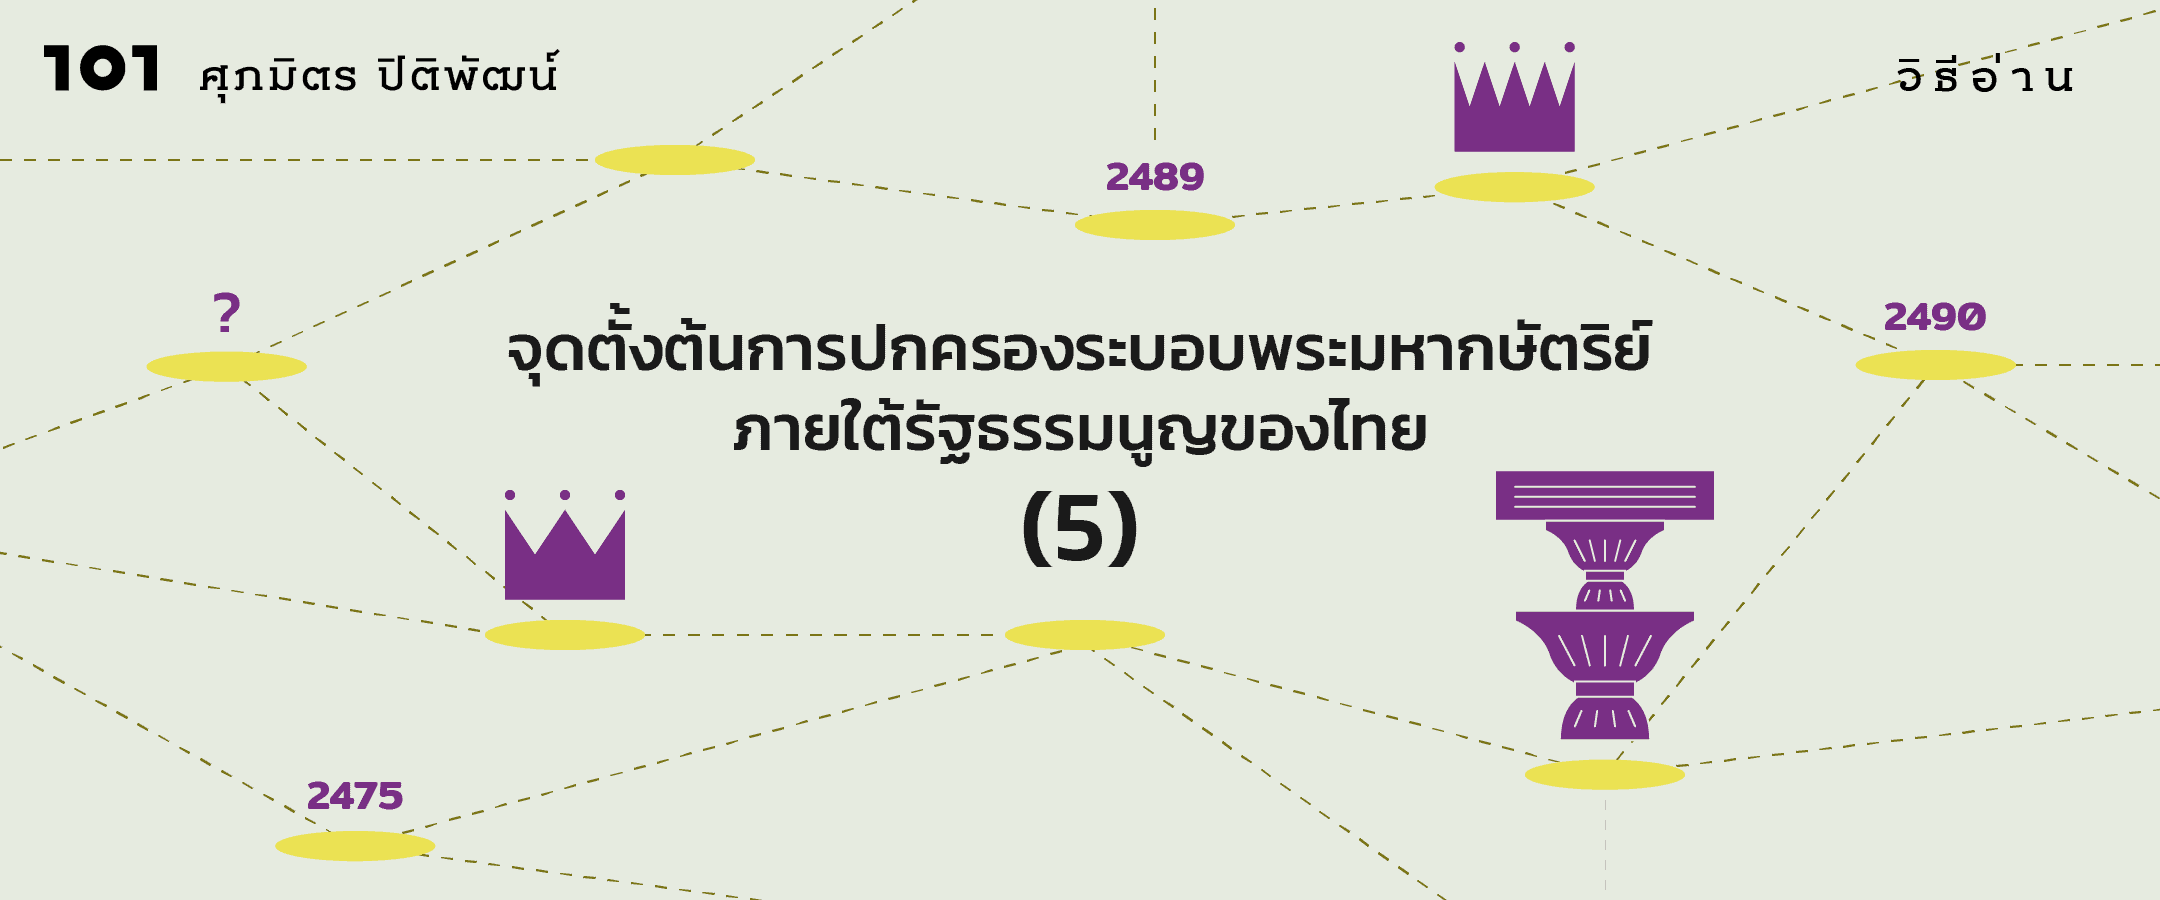 จุดตั้งต้นการปกครองระบอบพระมหากษัตริย์ภายใต้รัฐธรรมนูญของไทย (5)